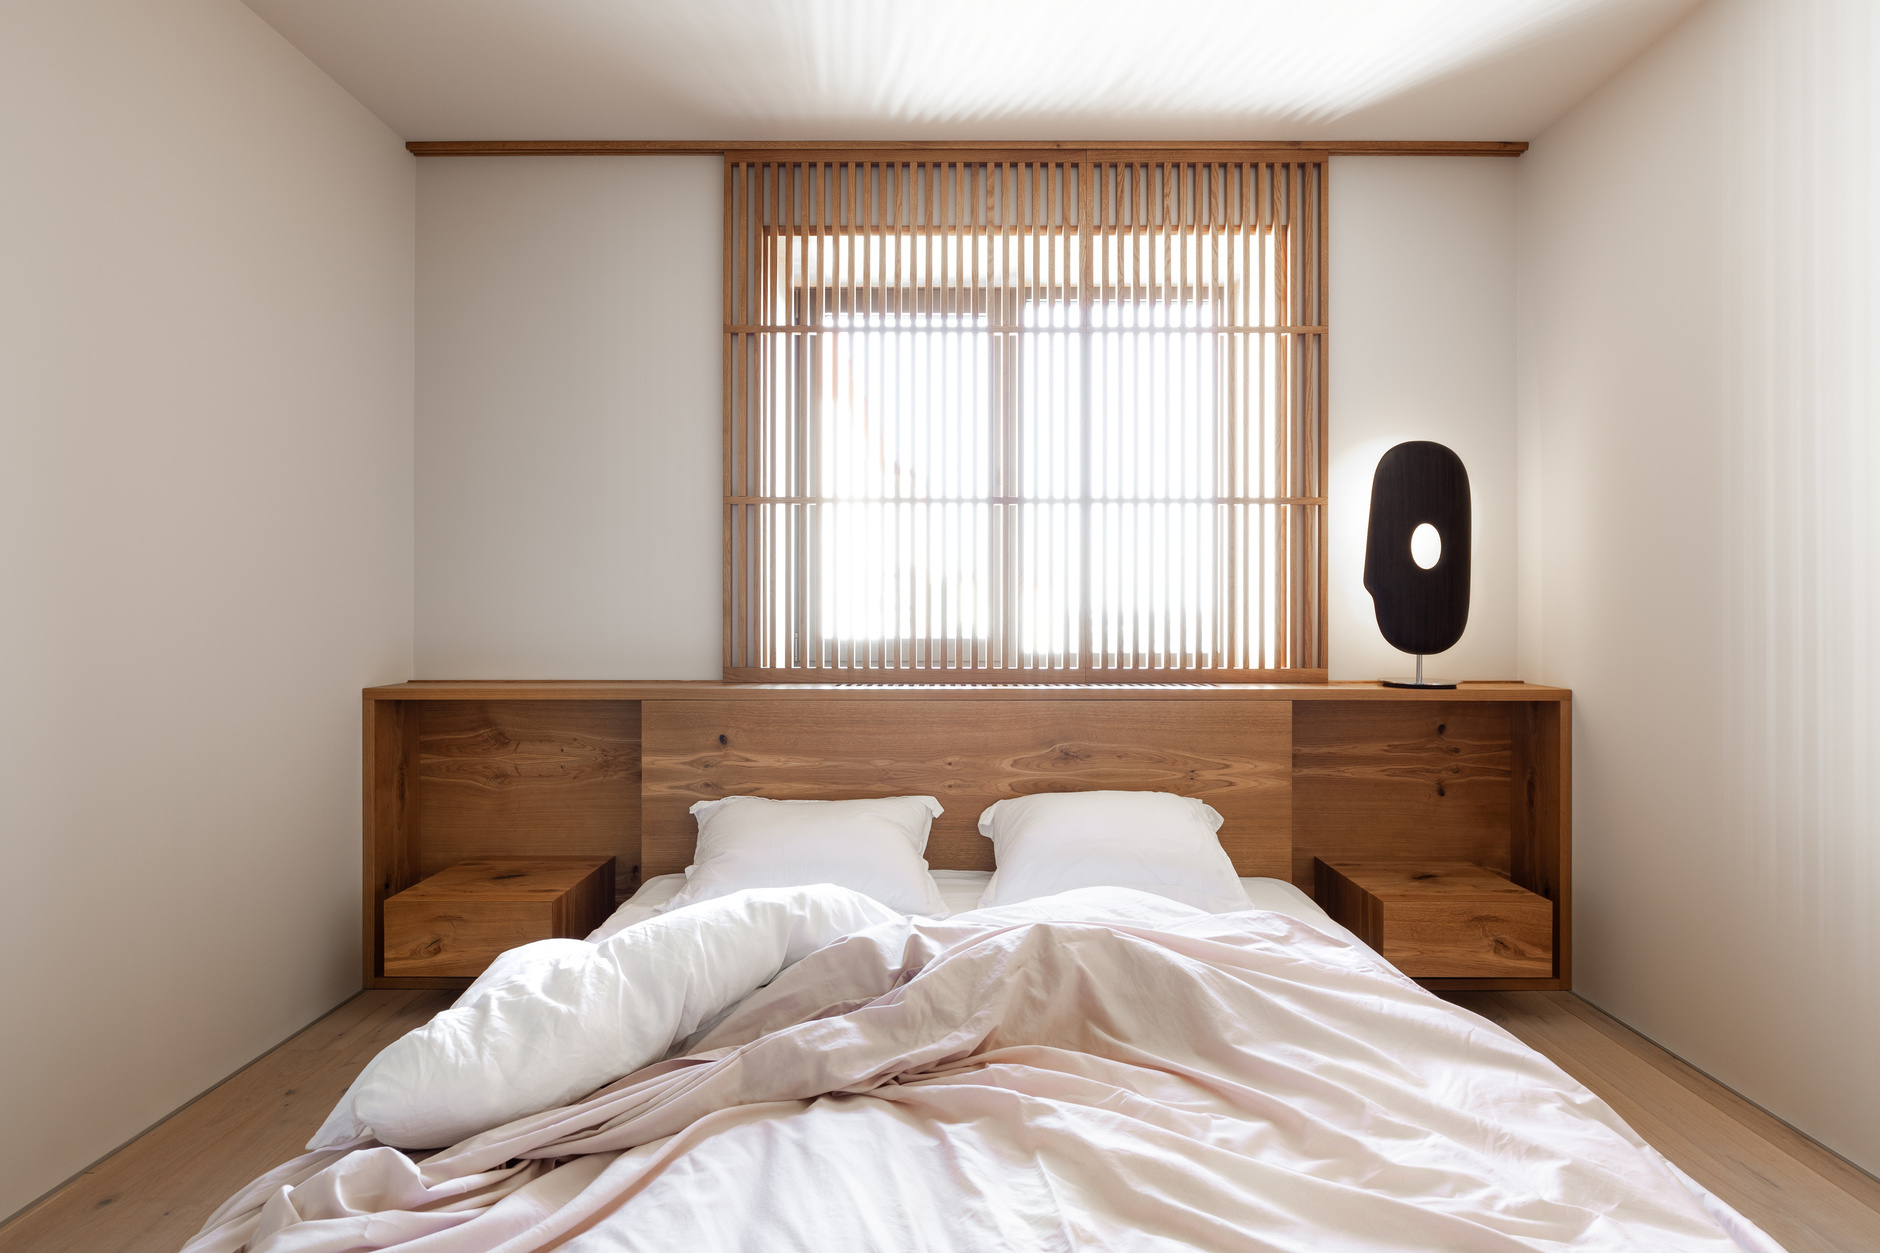 Chiếc giường thấp sàn đa năng này được đặt gia công theo bản phác thảo của NTK nội thất Rina Lovko. Khu vực phía trên nối liền với táp đầu giường cân xứng, tạo nên vẻ đẹp hài hòa, cân đối cho phòng ngủ kiểu Nhật.